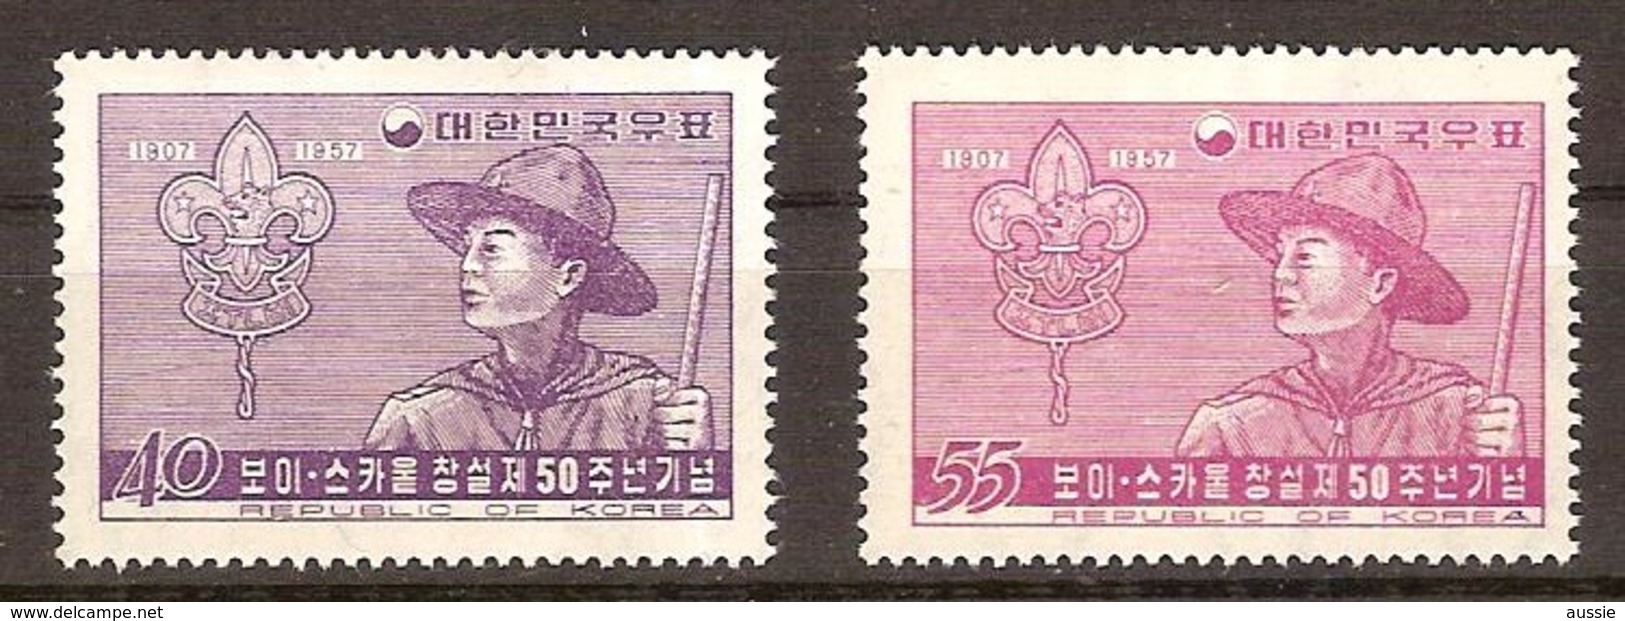 Corée Du Sud South-Korea 1957 Yvertn° 178-179 *** MNH Cote 7 Euro Cinquantenaire Du Scoutisme - Korea, South